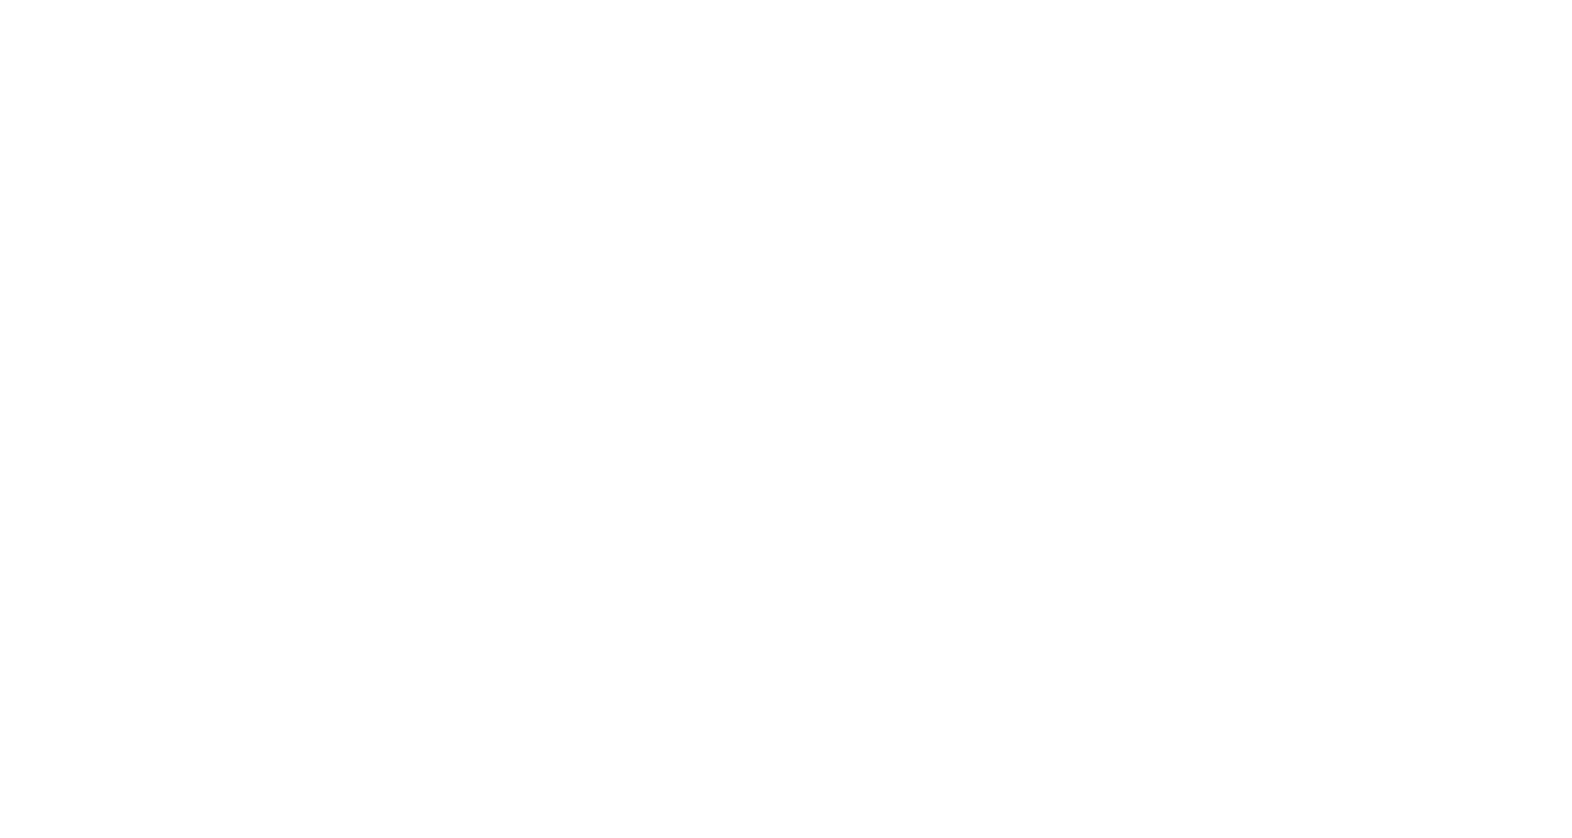 Lanvin Group logo pour fonds sombres (PNG transparent)